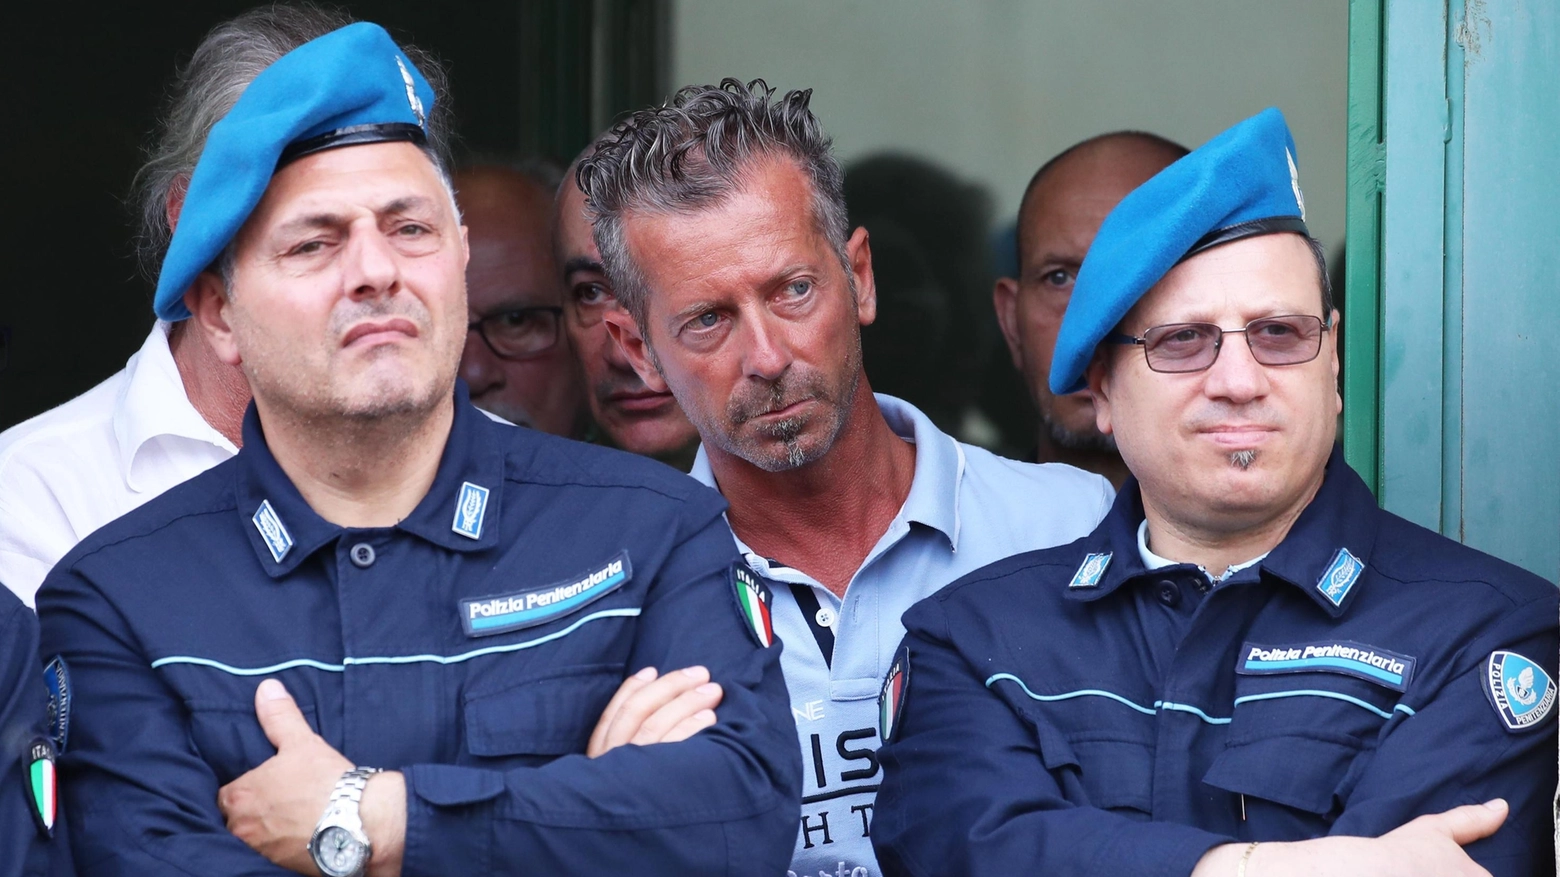 Al centro, Massimo Bossetti, condannato all'ergastolo per l'omicidio di Yara Gambirasio